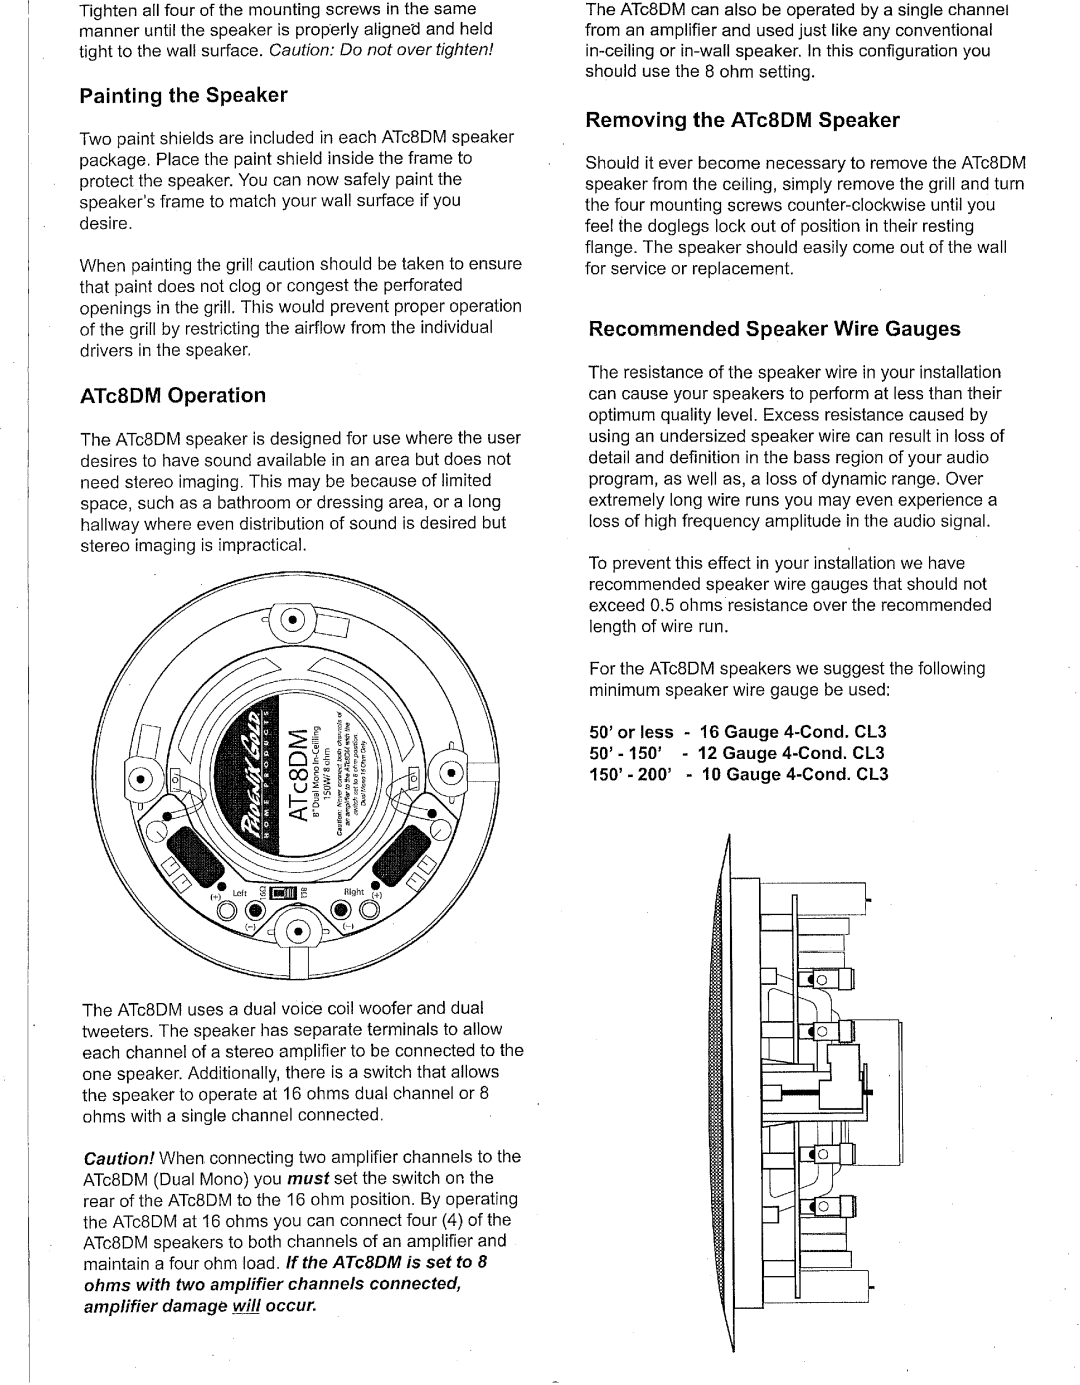 Phoenix Gold 8" 2-Way In-Ceiling Speakers manual 